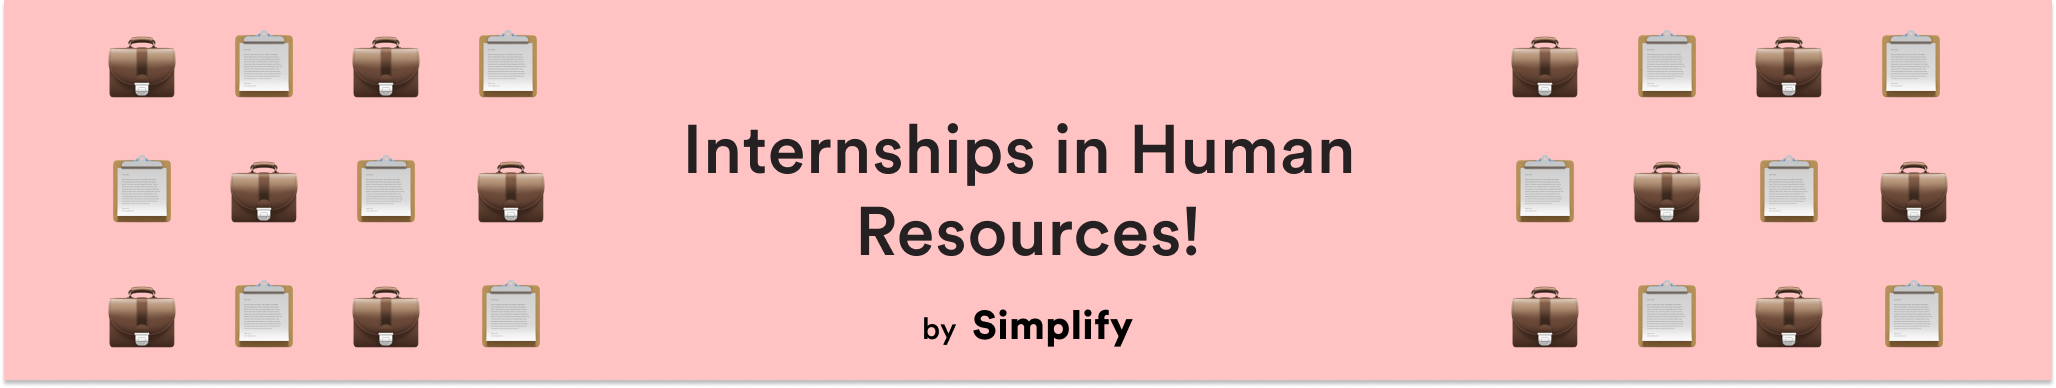 Internships in Human Resources 